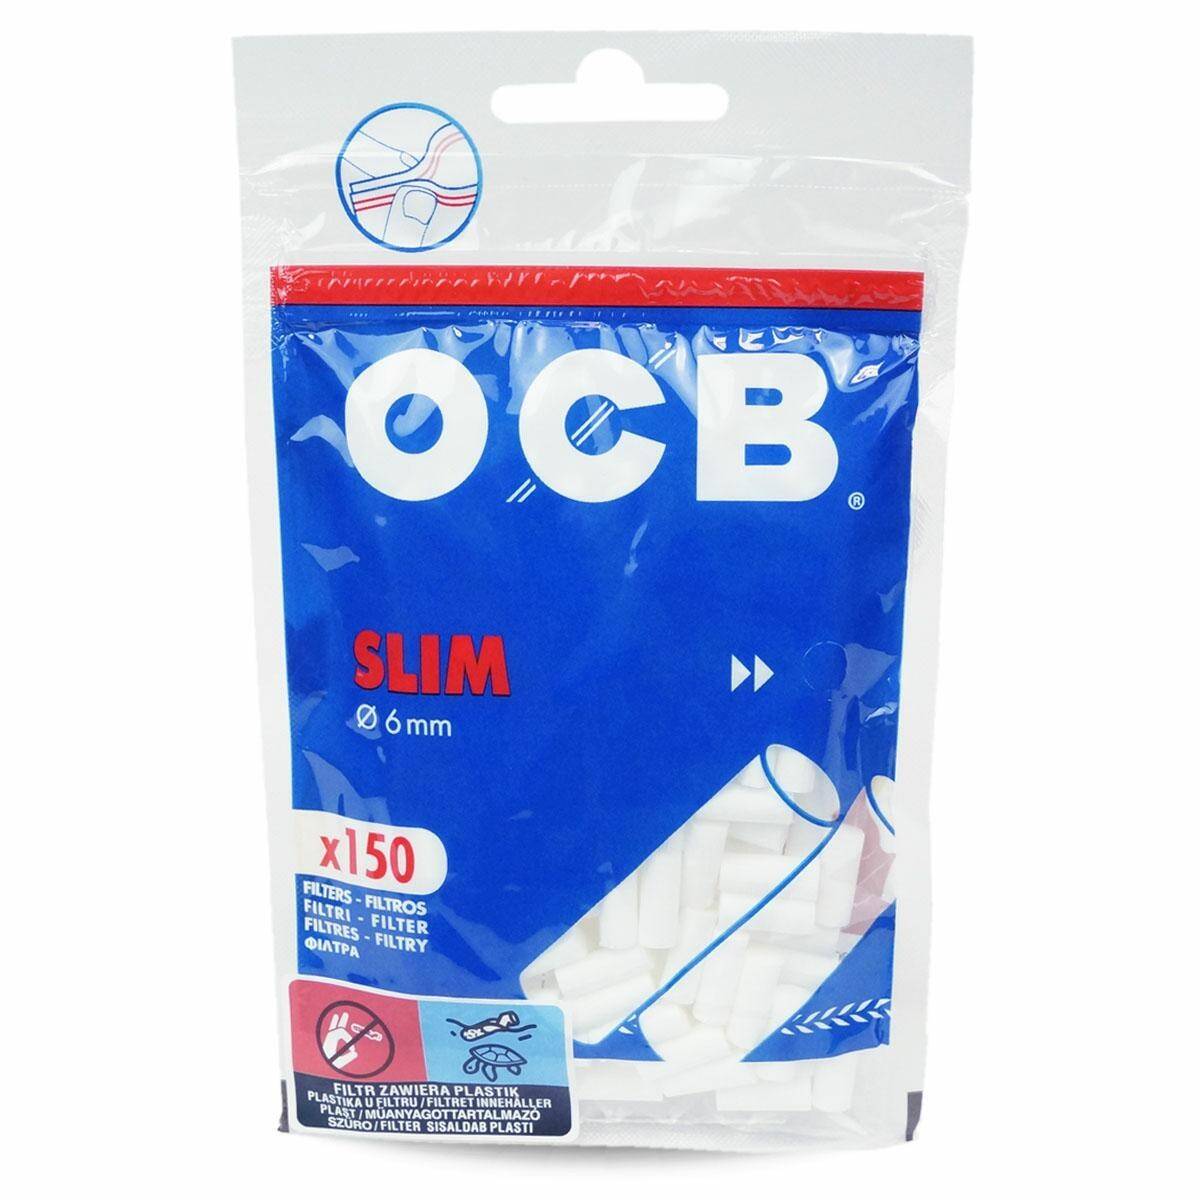 Filters OCB fi6 Slim a`150